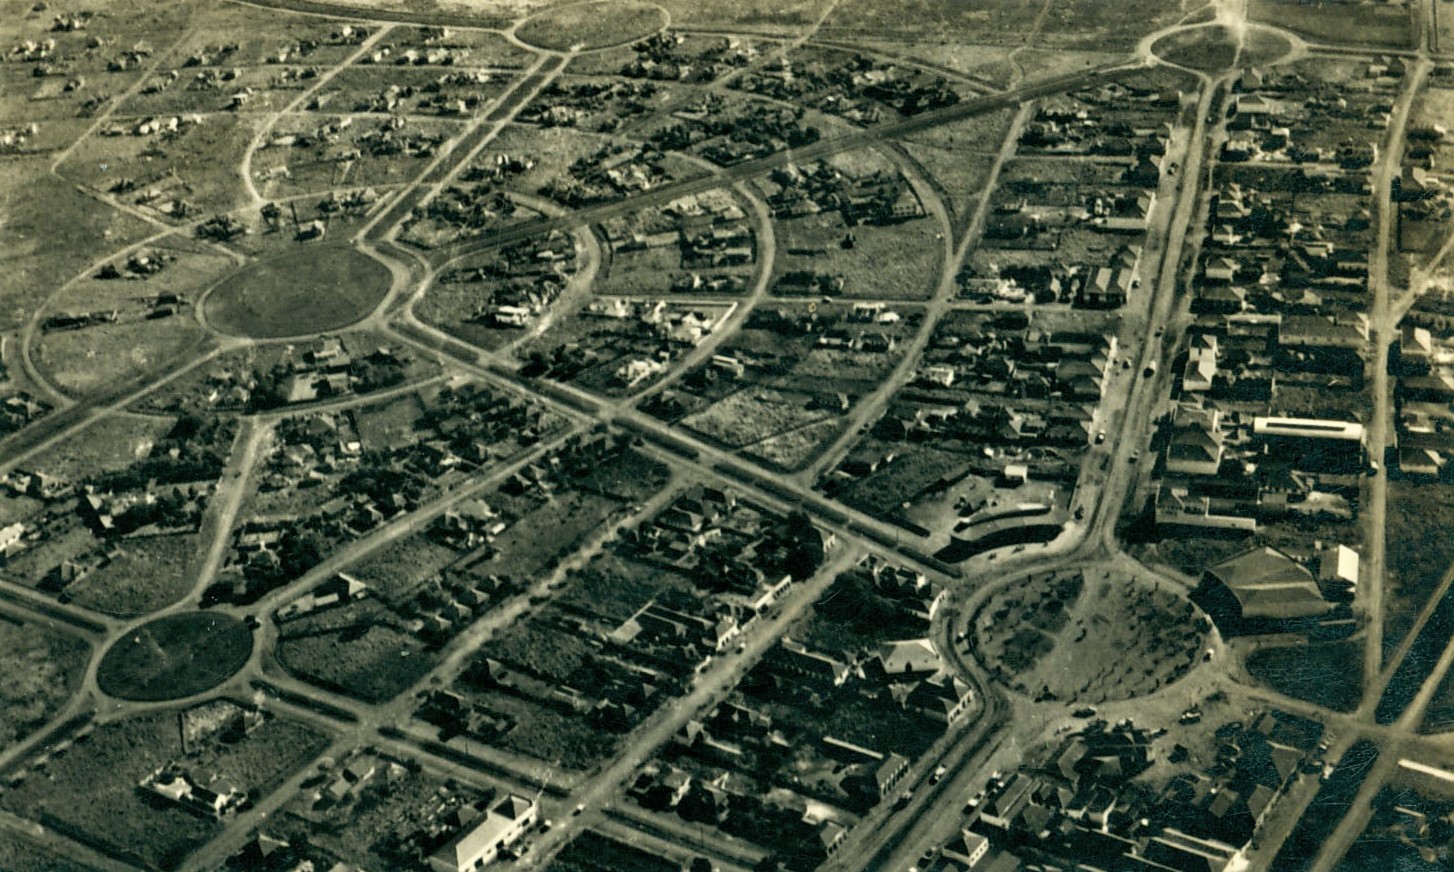 Vista aérea da Zona 4 - Década de 1950